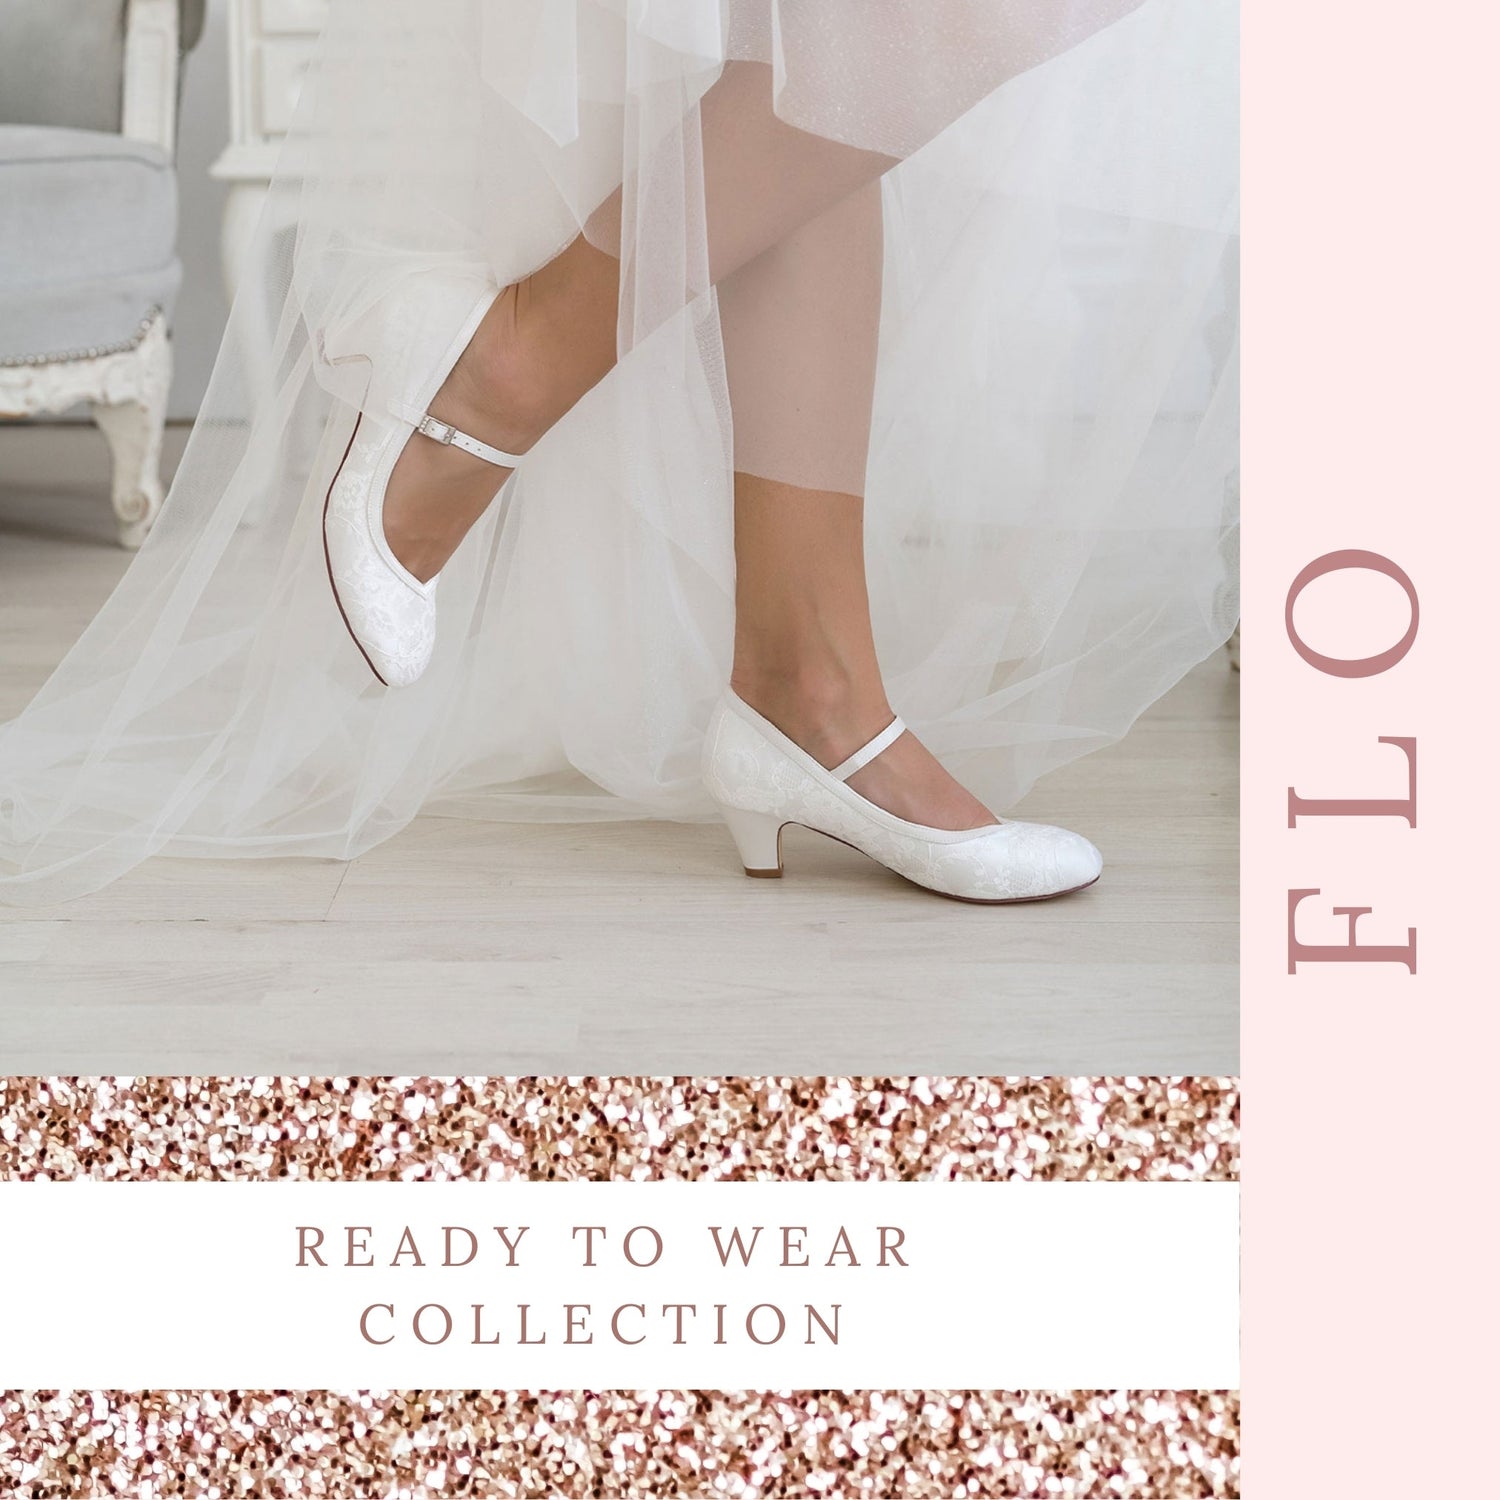 lace-bridal-shoes